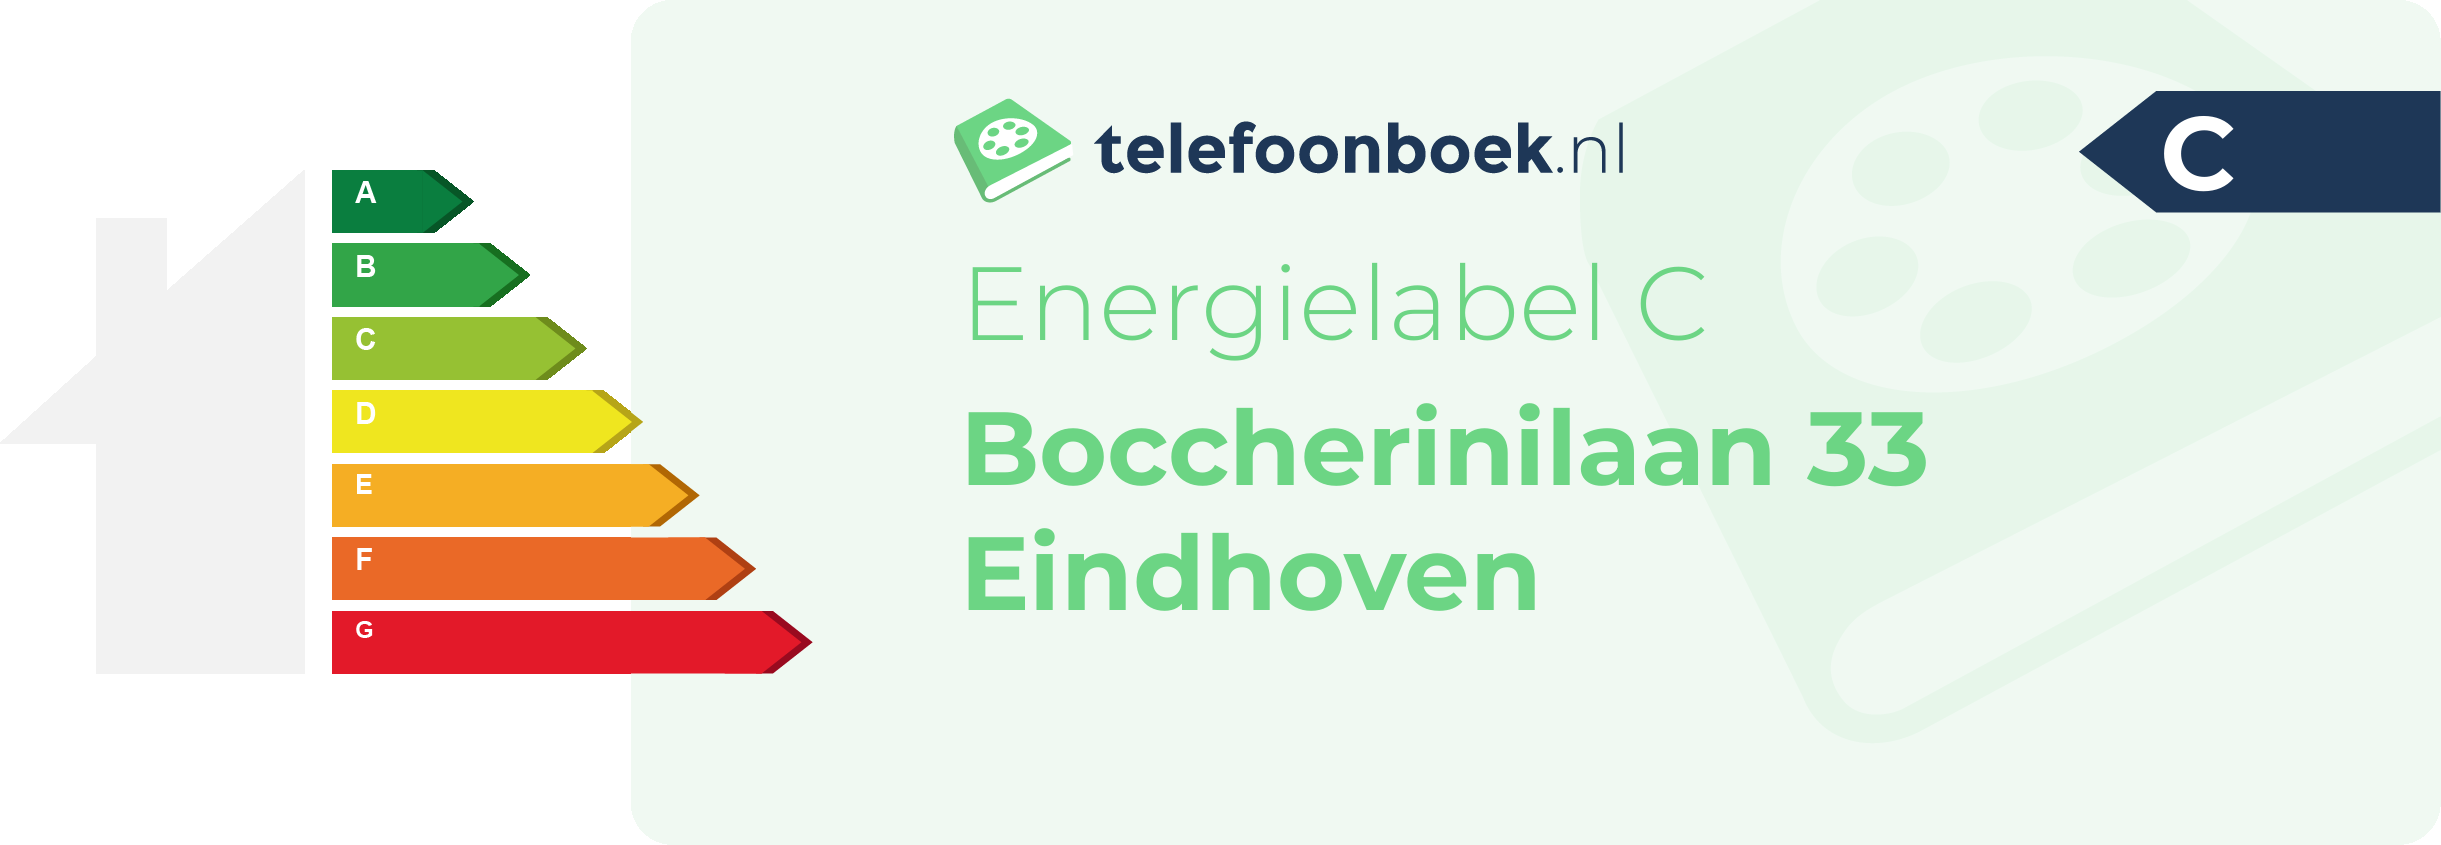 Energielabel Boccherinilaan 33 Eindhoven